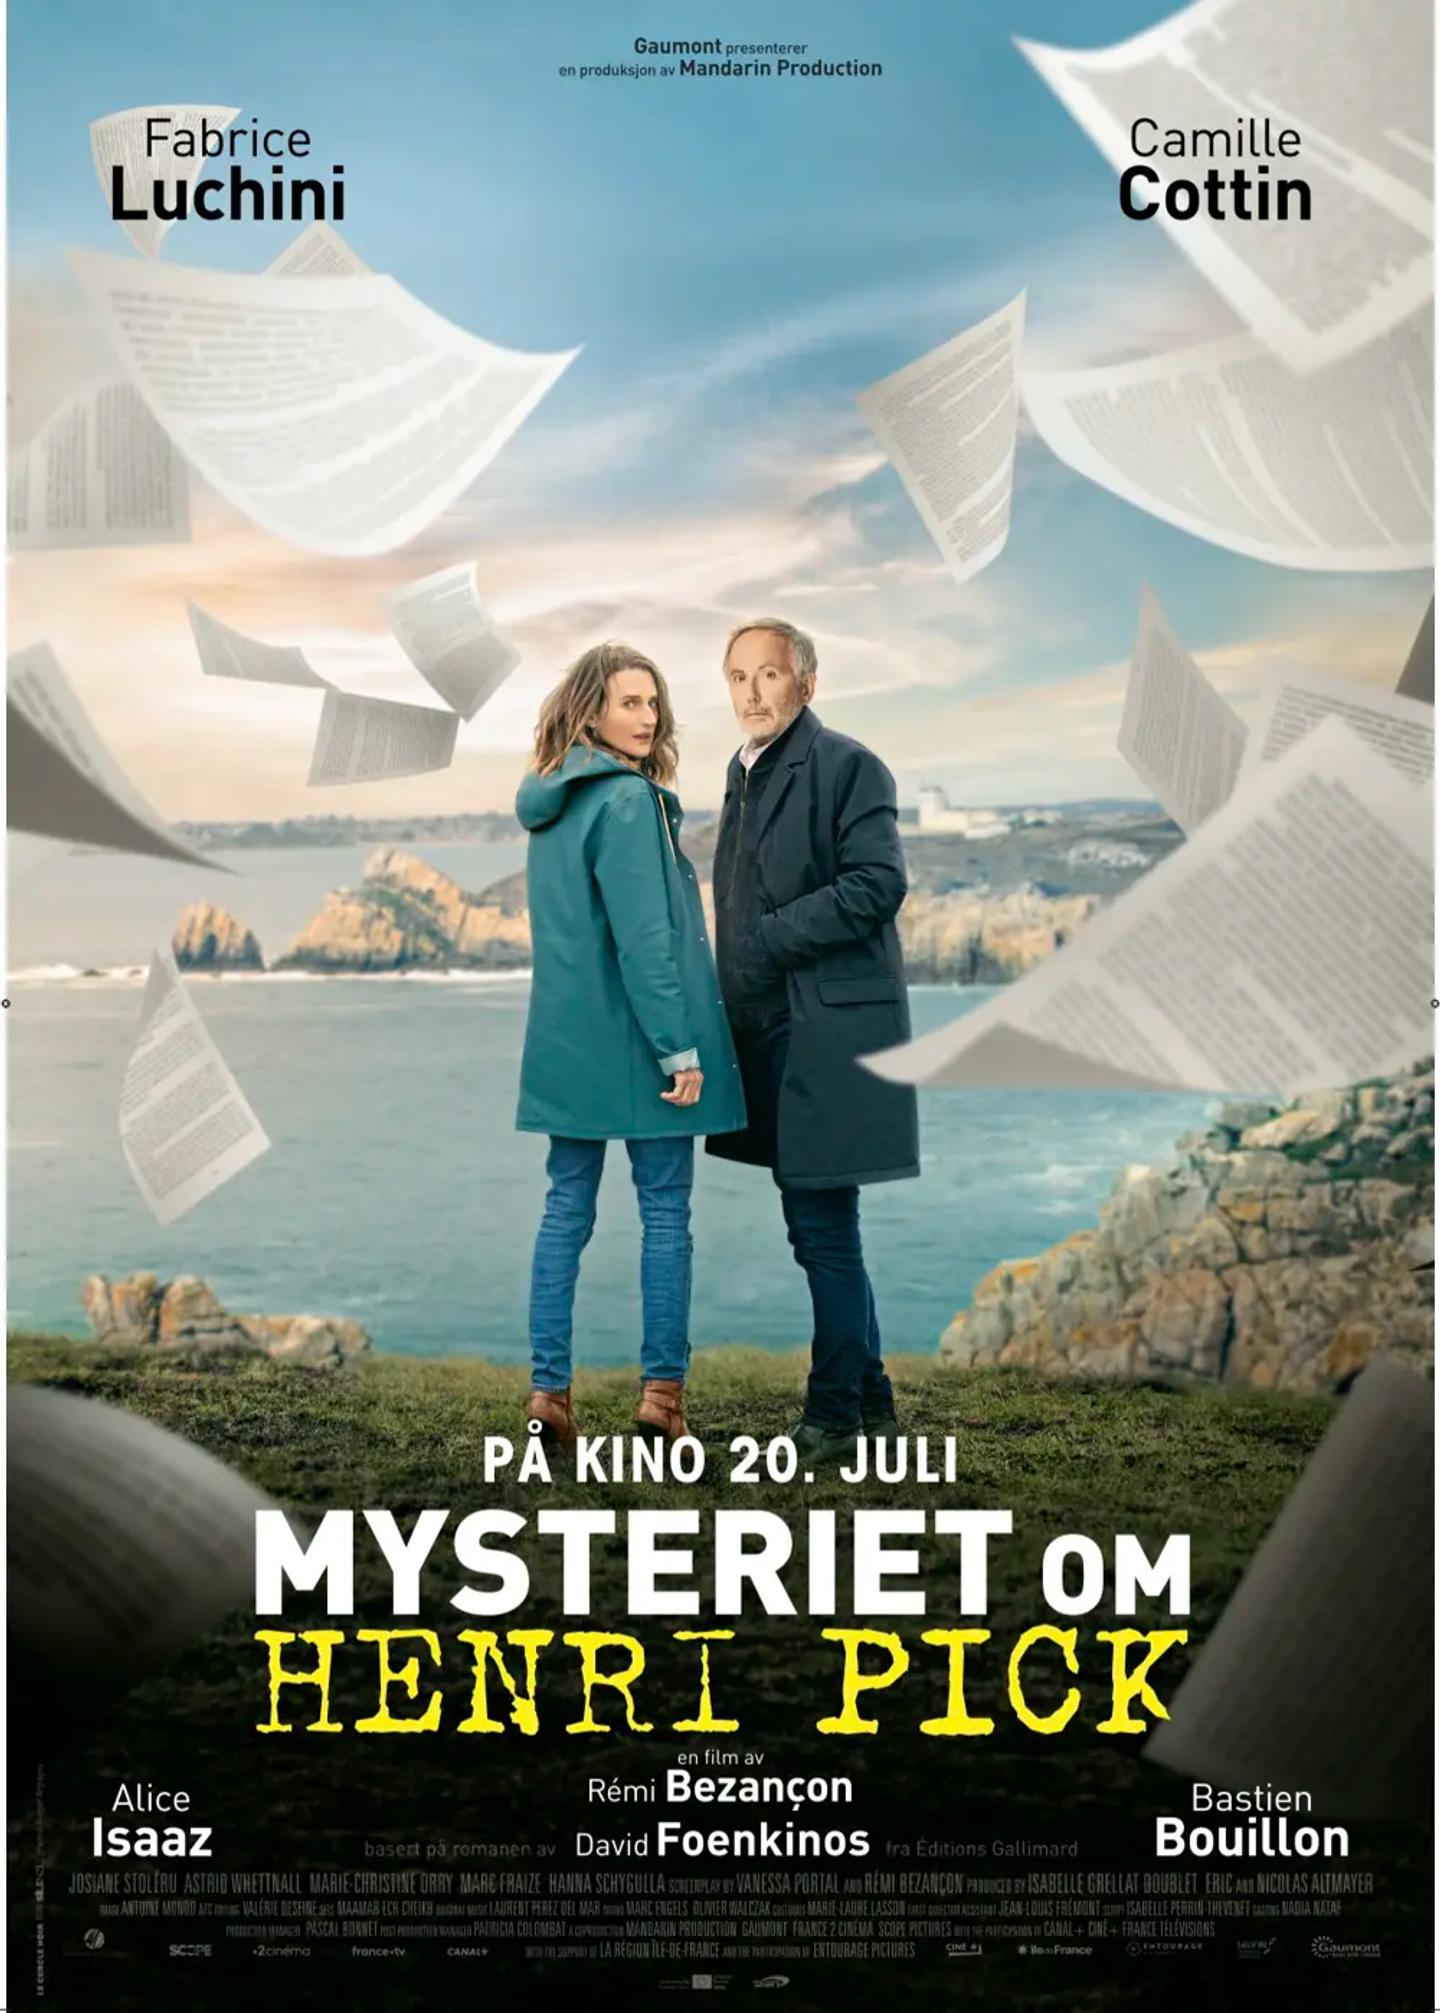 Plakat for 'Mysteriet Henri Pick'